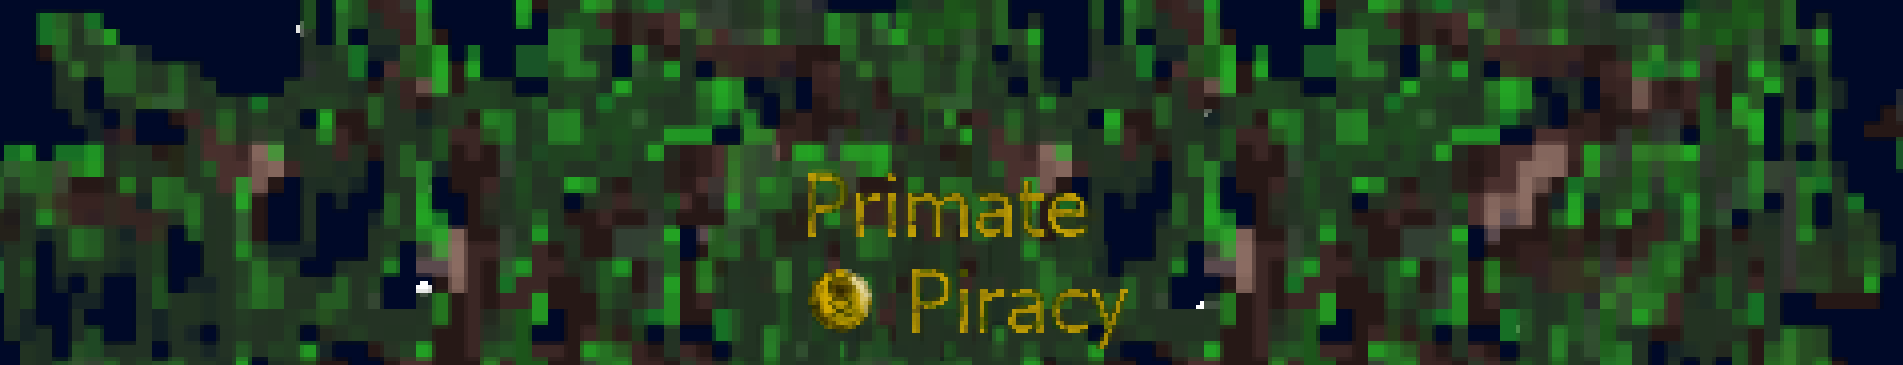 Primate Piracy